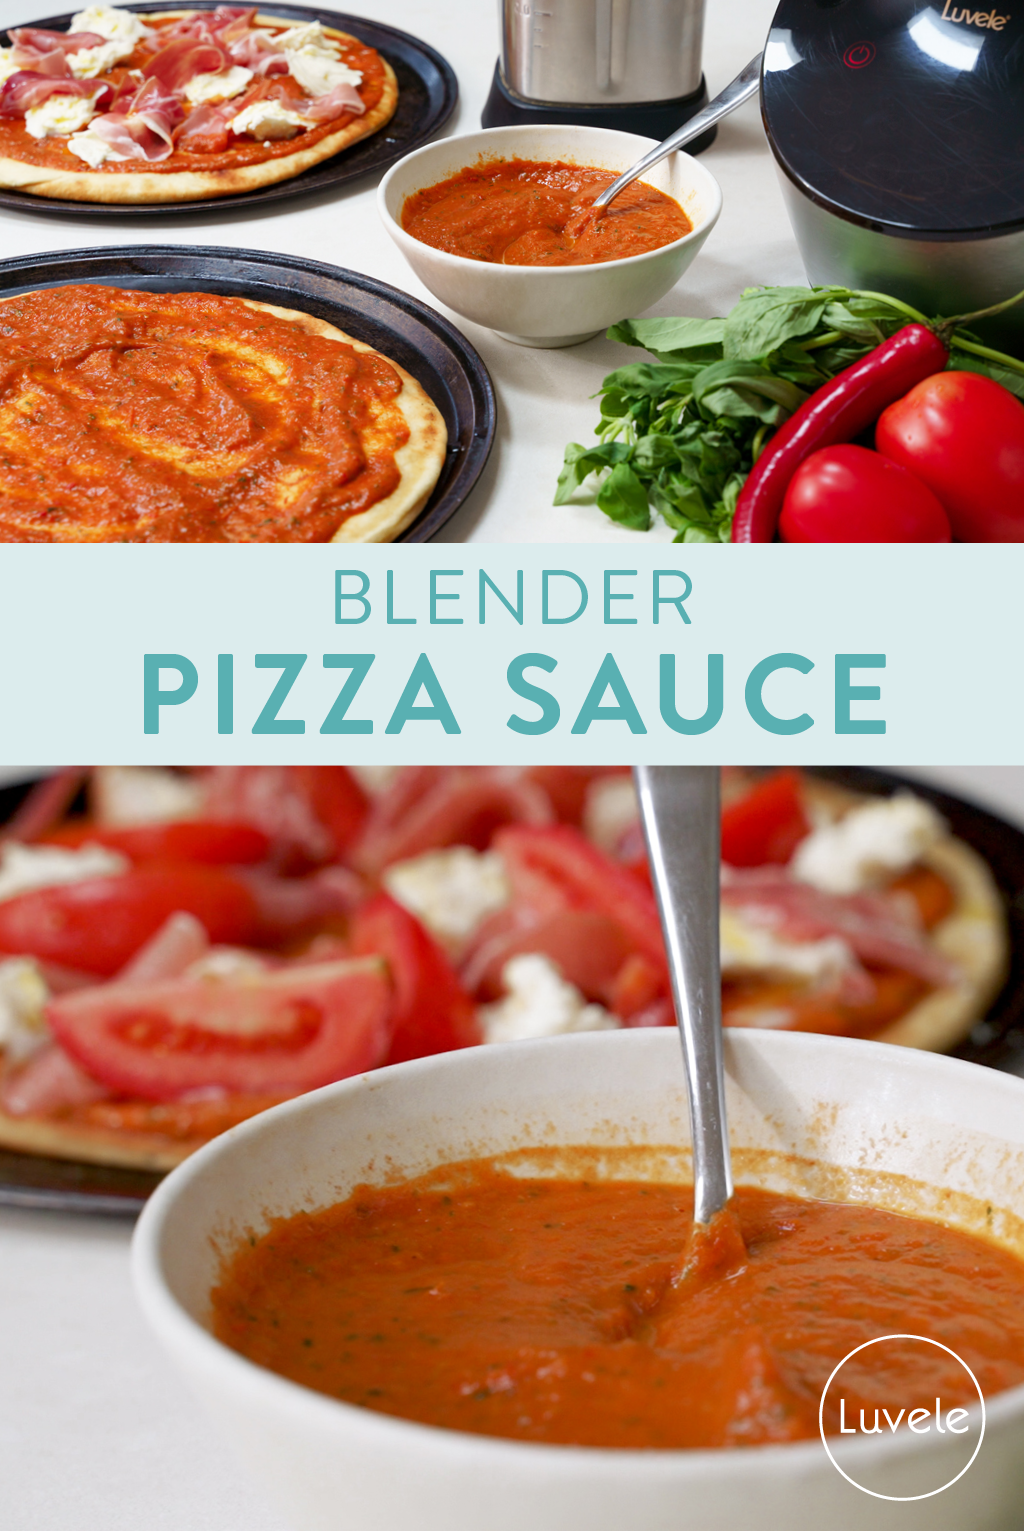 Blender pizza sauce